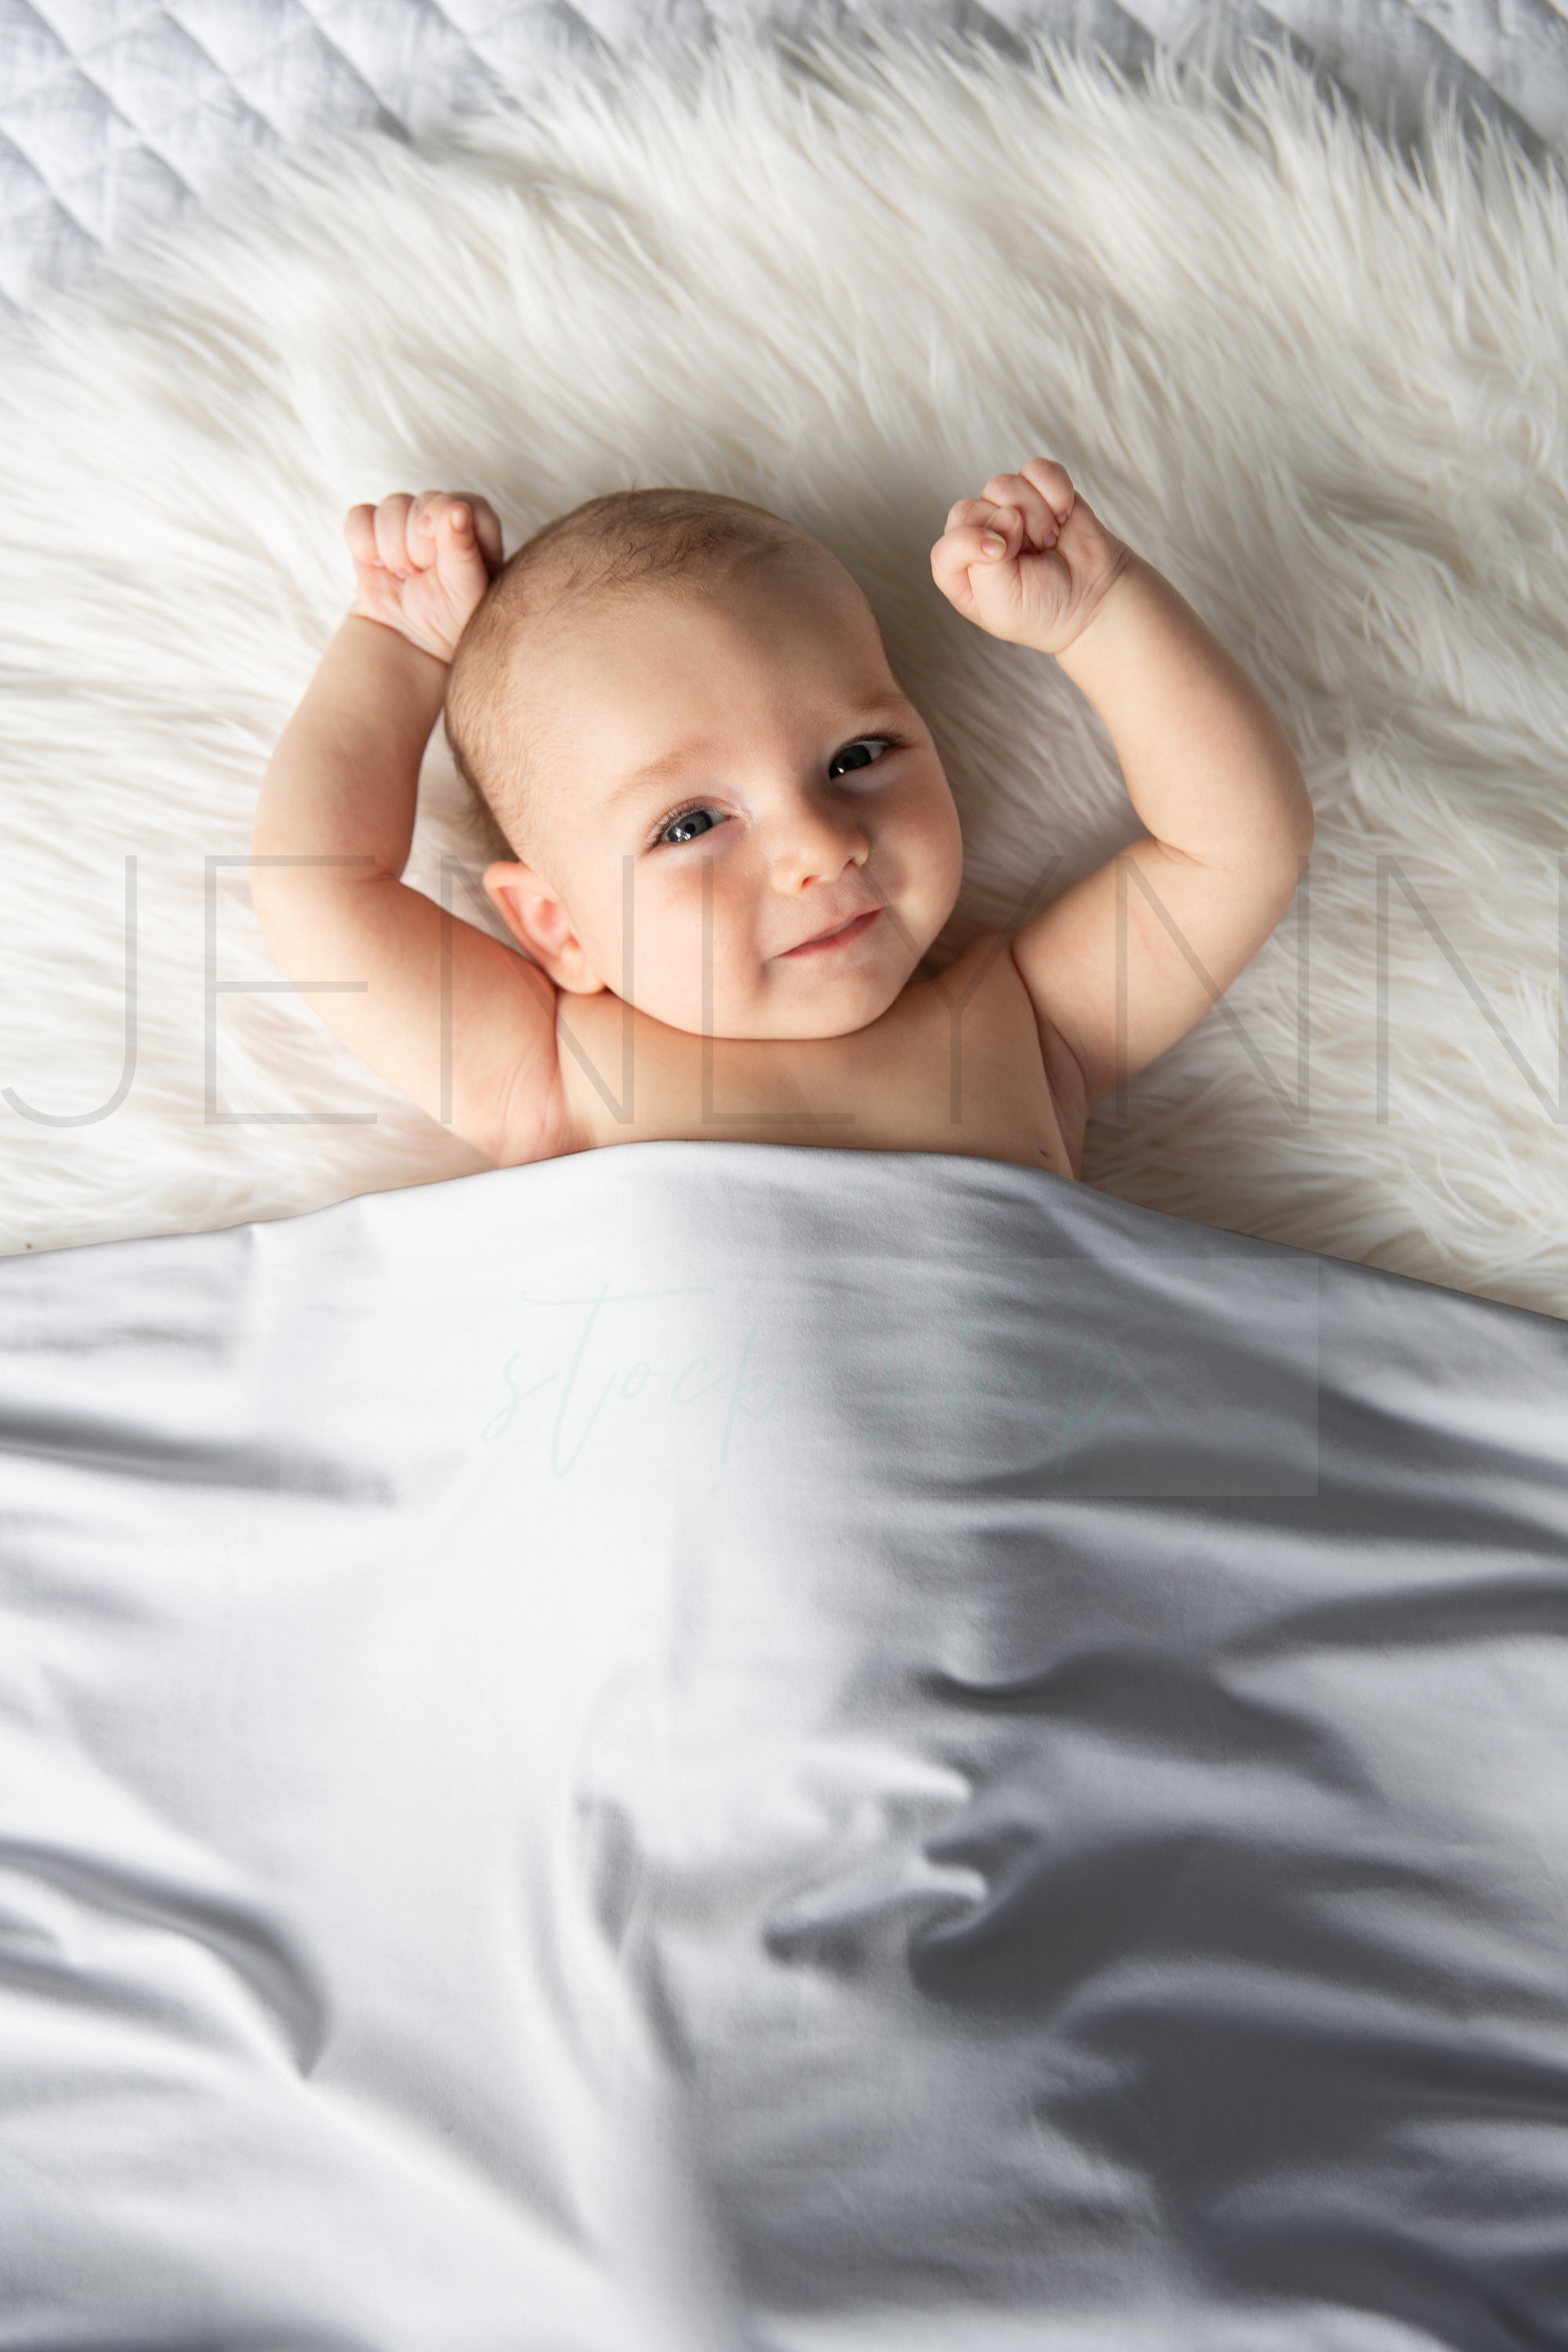 Stretch Jersey Blanket on baby boy Mockup #BB17 PSD